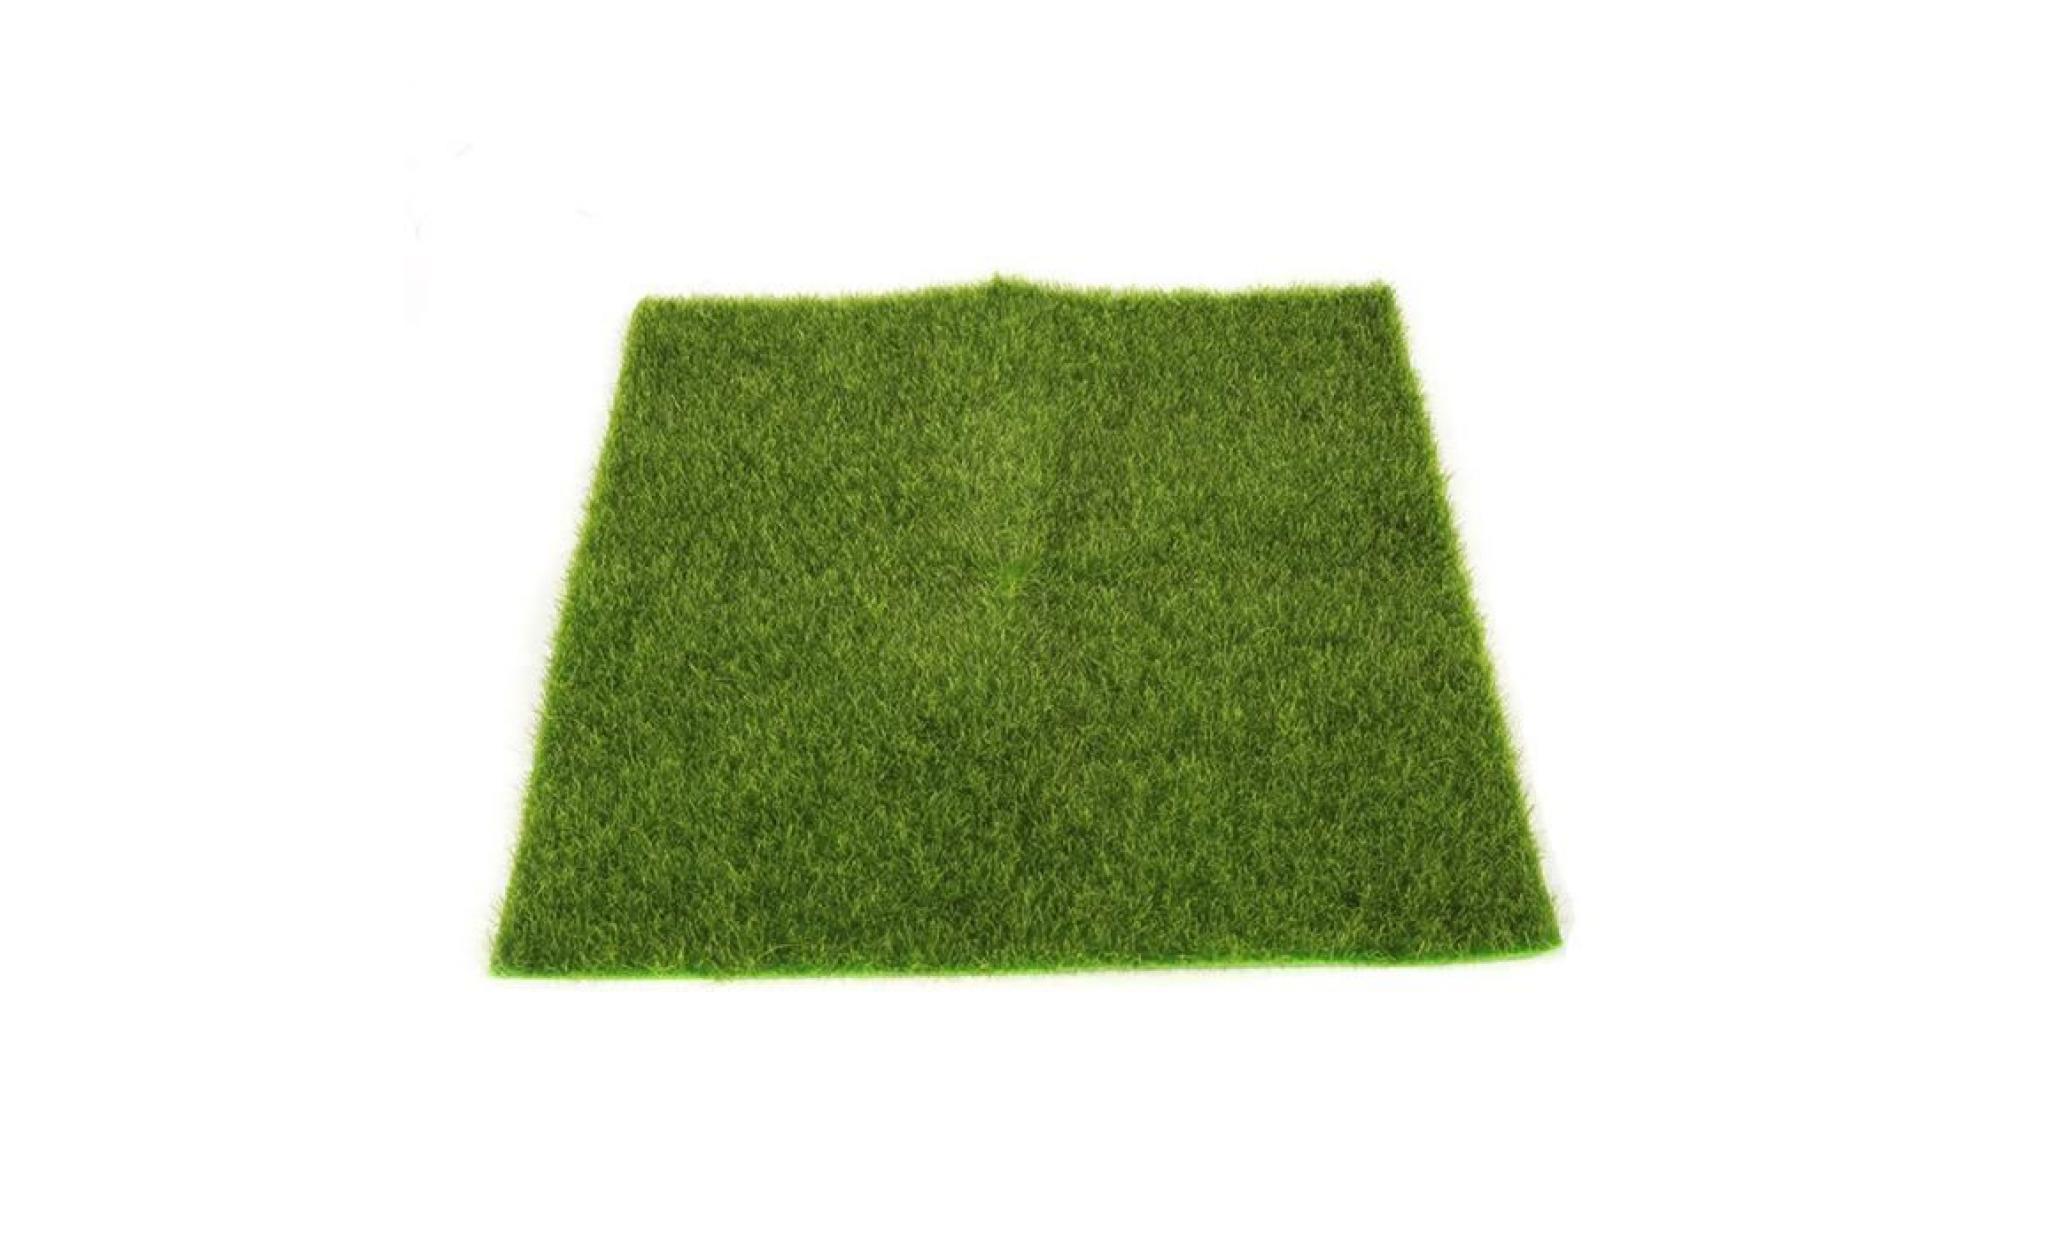 mosakog® gazon artificiel faux jardin herbe pelouse moss craft miniature dollhouse décor vert_1338 pas cher